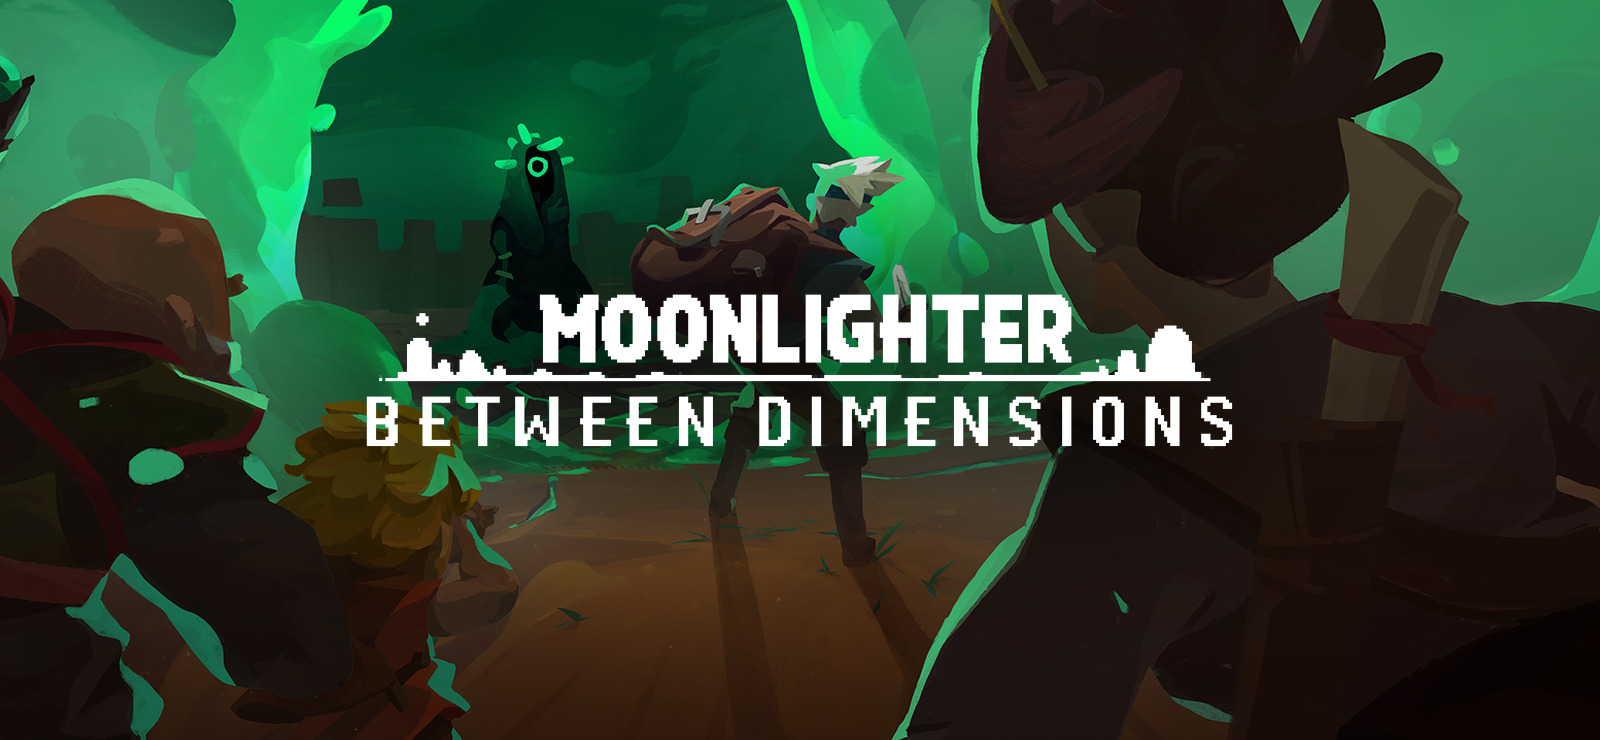 Moonlighter цены. Moonlighter between Dimensions. Moonlighter DLC. Moonlighter стены. Moonlighter надзор.